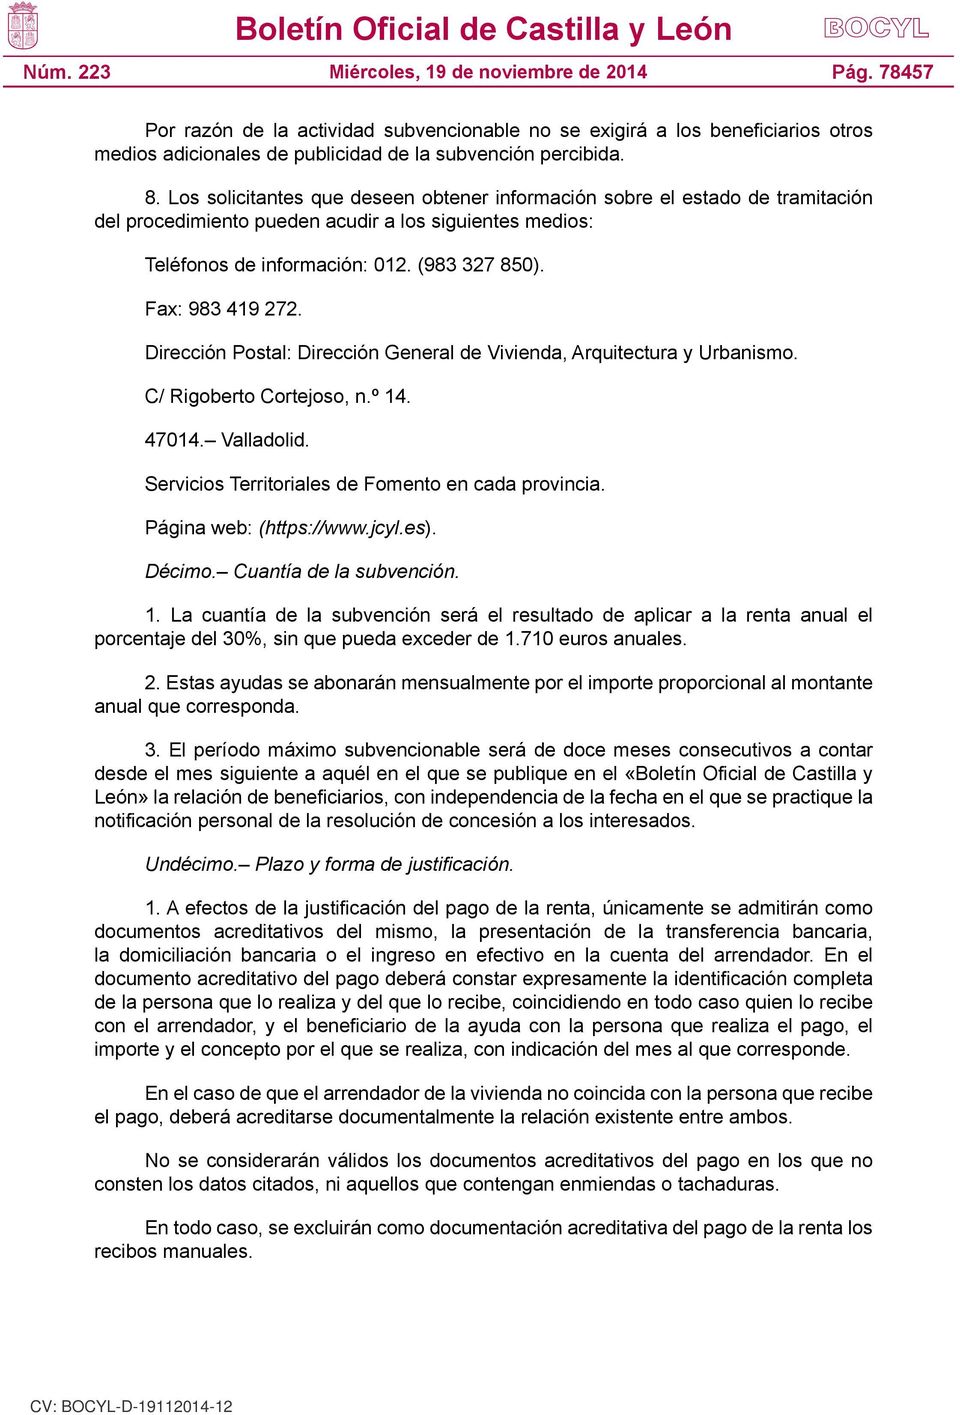 Dirección Postal: Dirección General de Vivienda, Arquitectura y Urbanismo. C/ Rigoberto Cortejoso, n.º 14. 47014. Valladolid. Servicios Territoriales de Fomento en cada provincia.